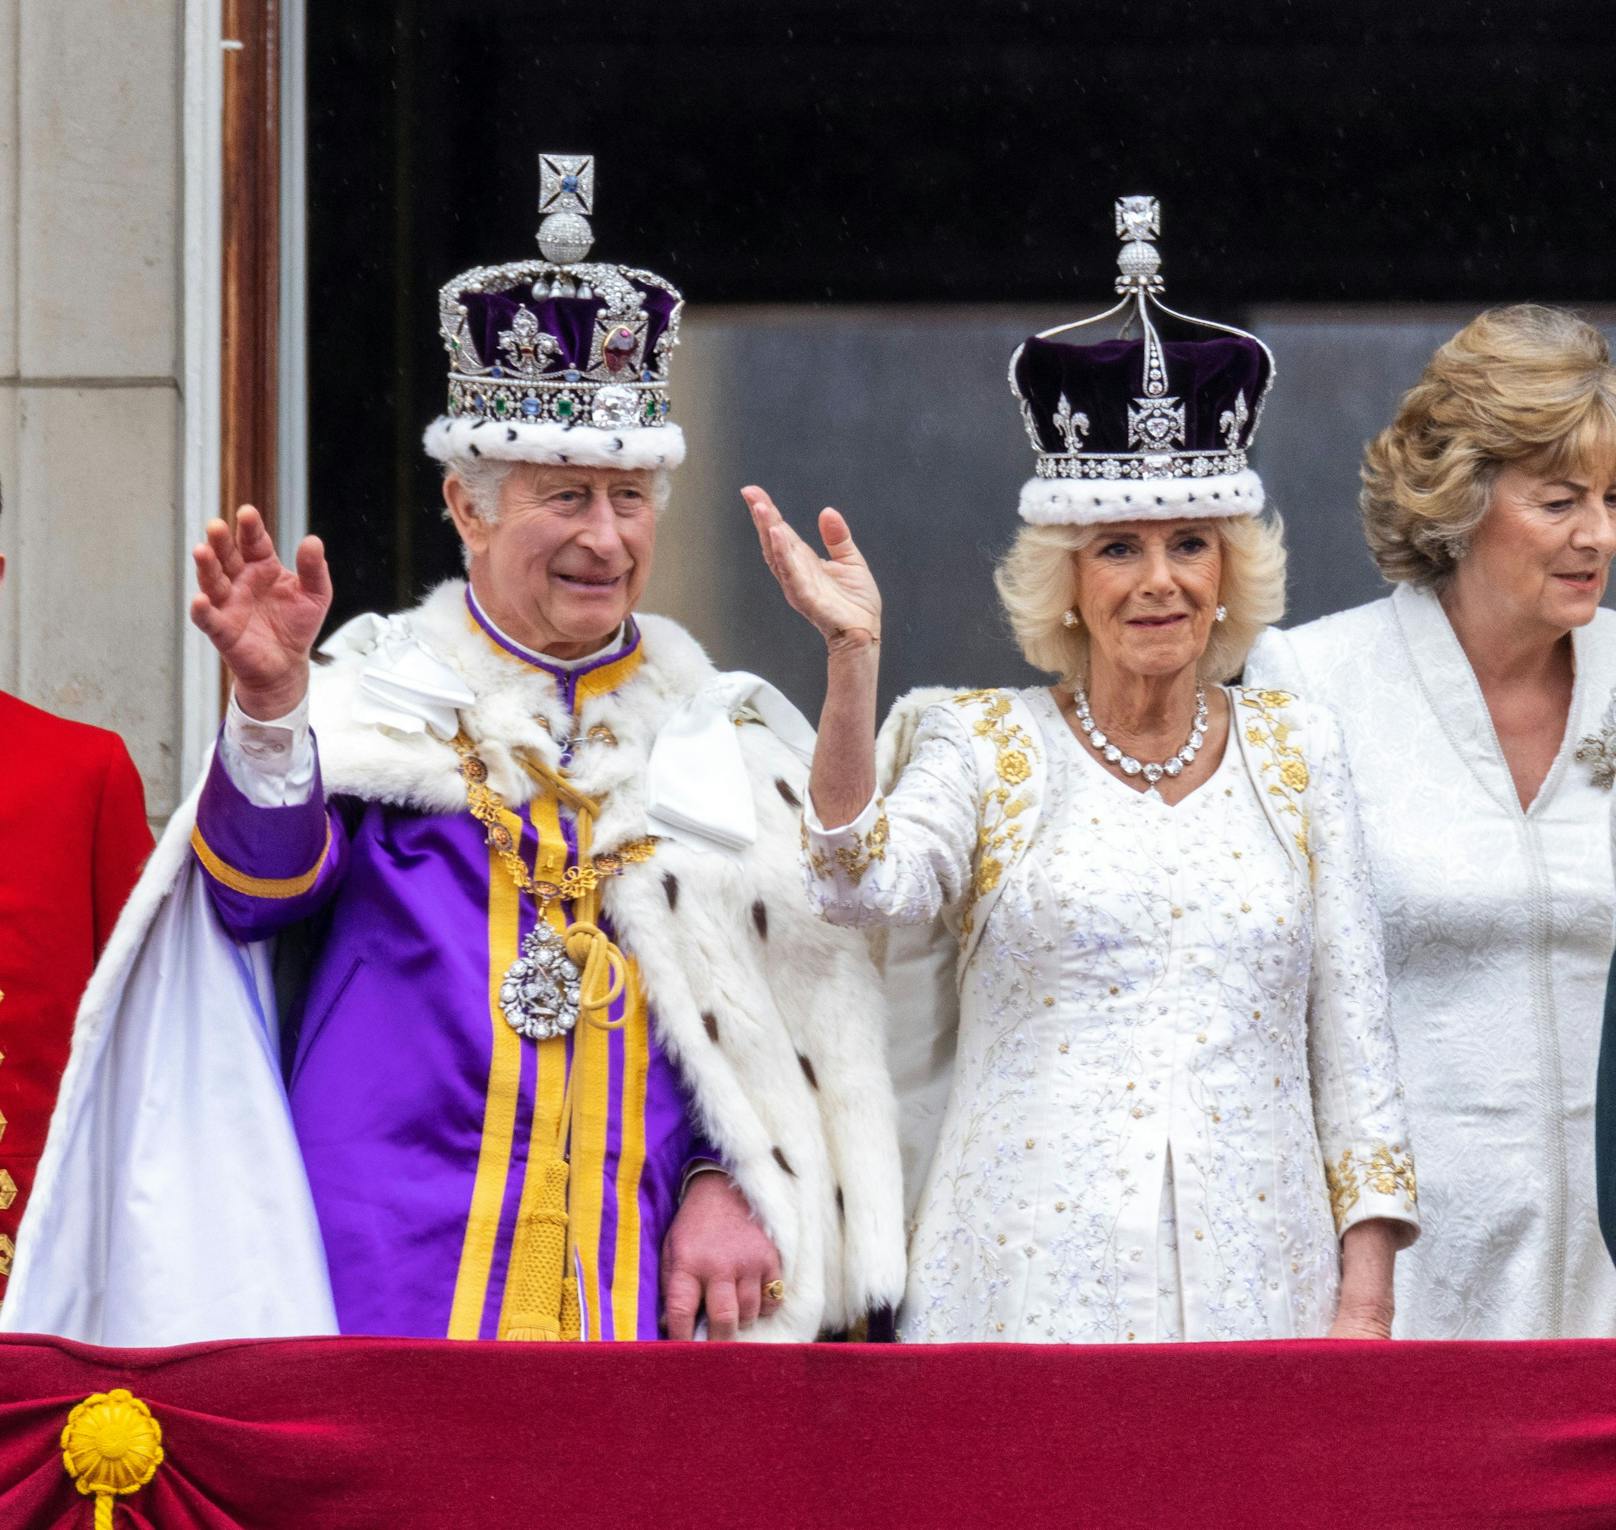 King Charles III. wurde am Samstag offiziell gekrönt. Auf den zahlreichen Fotos vom Tag fielen einigen Beobachtern die geschwollenen Finger des Monarchen auf.